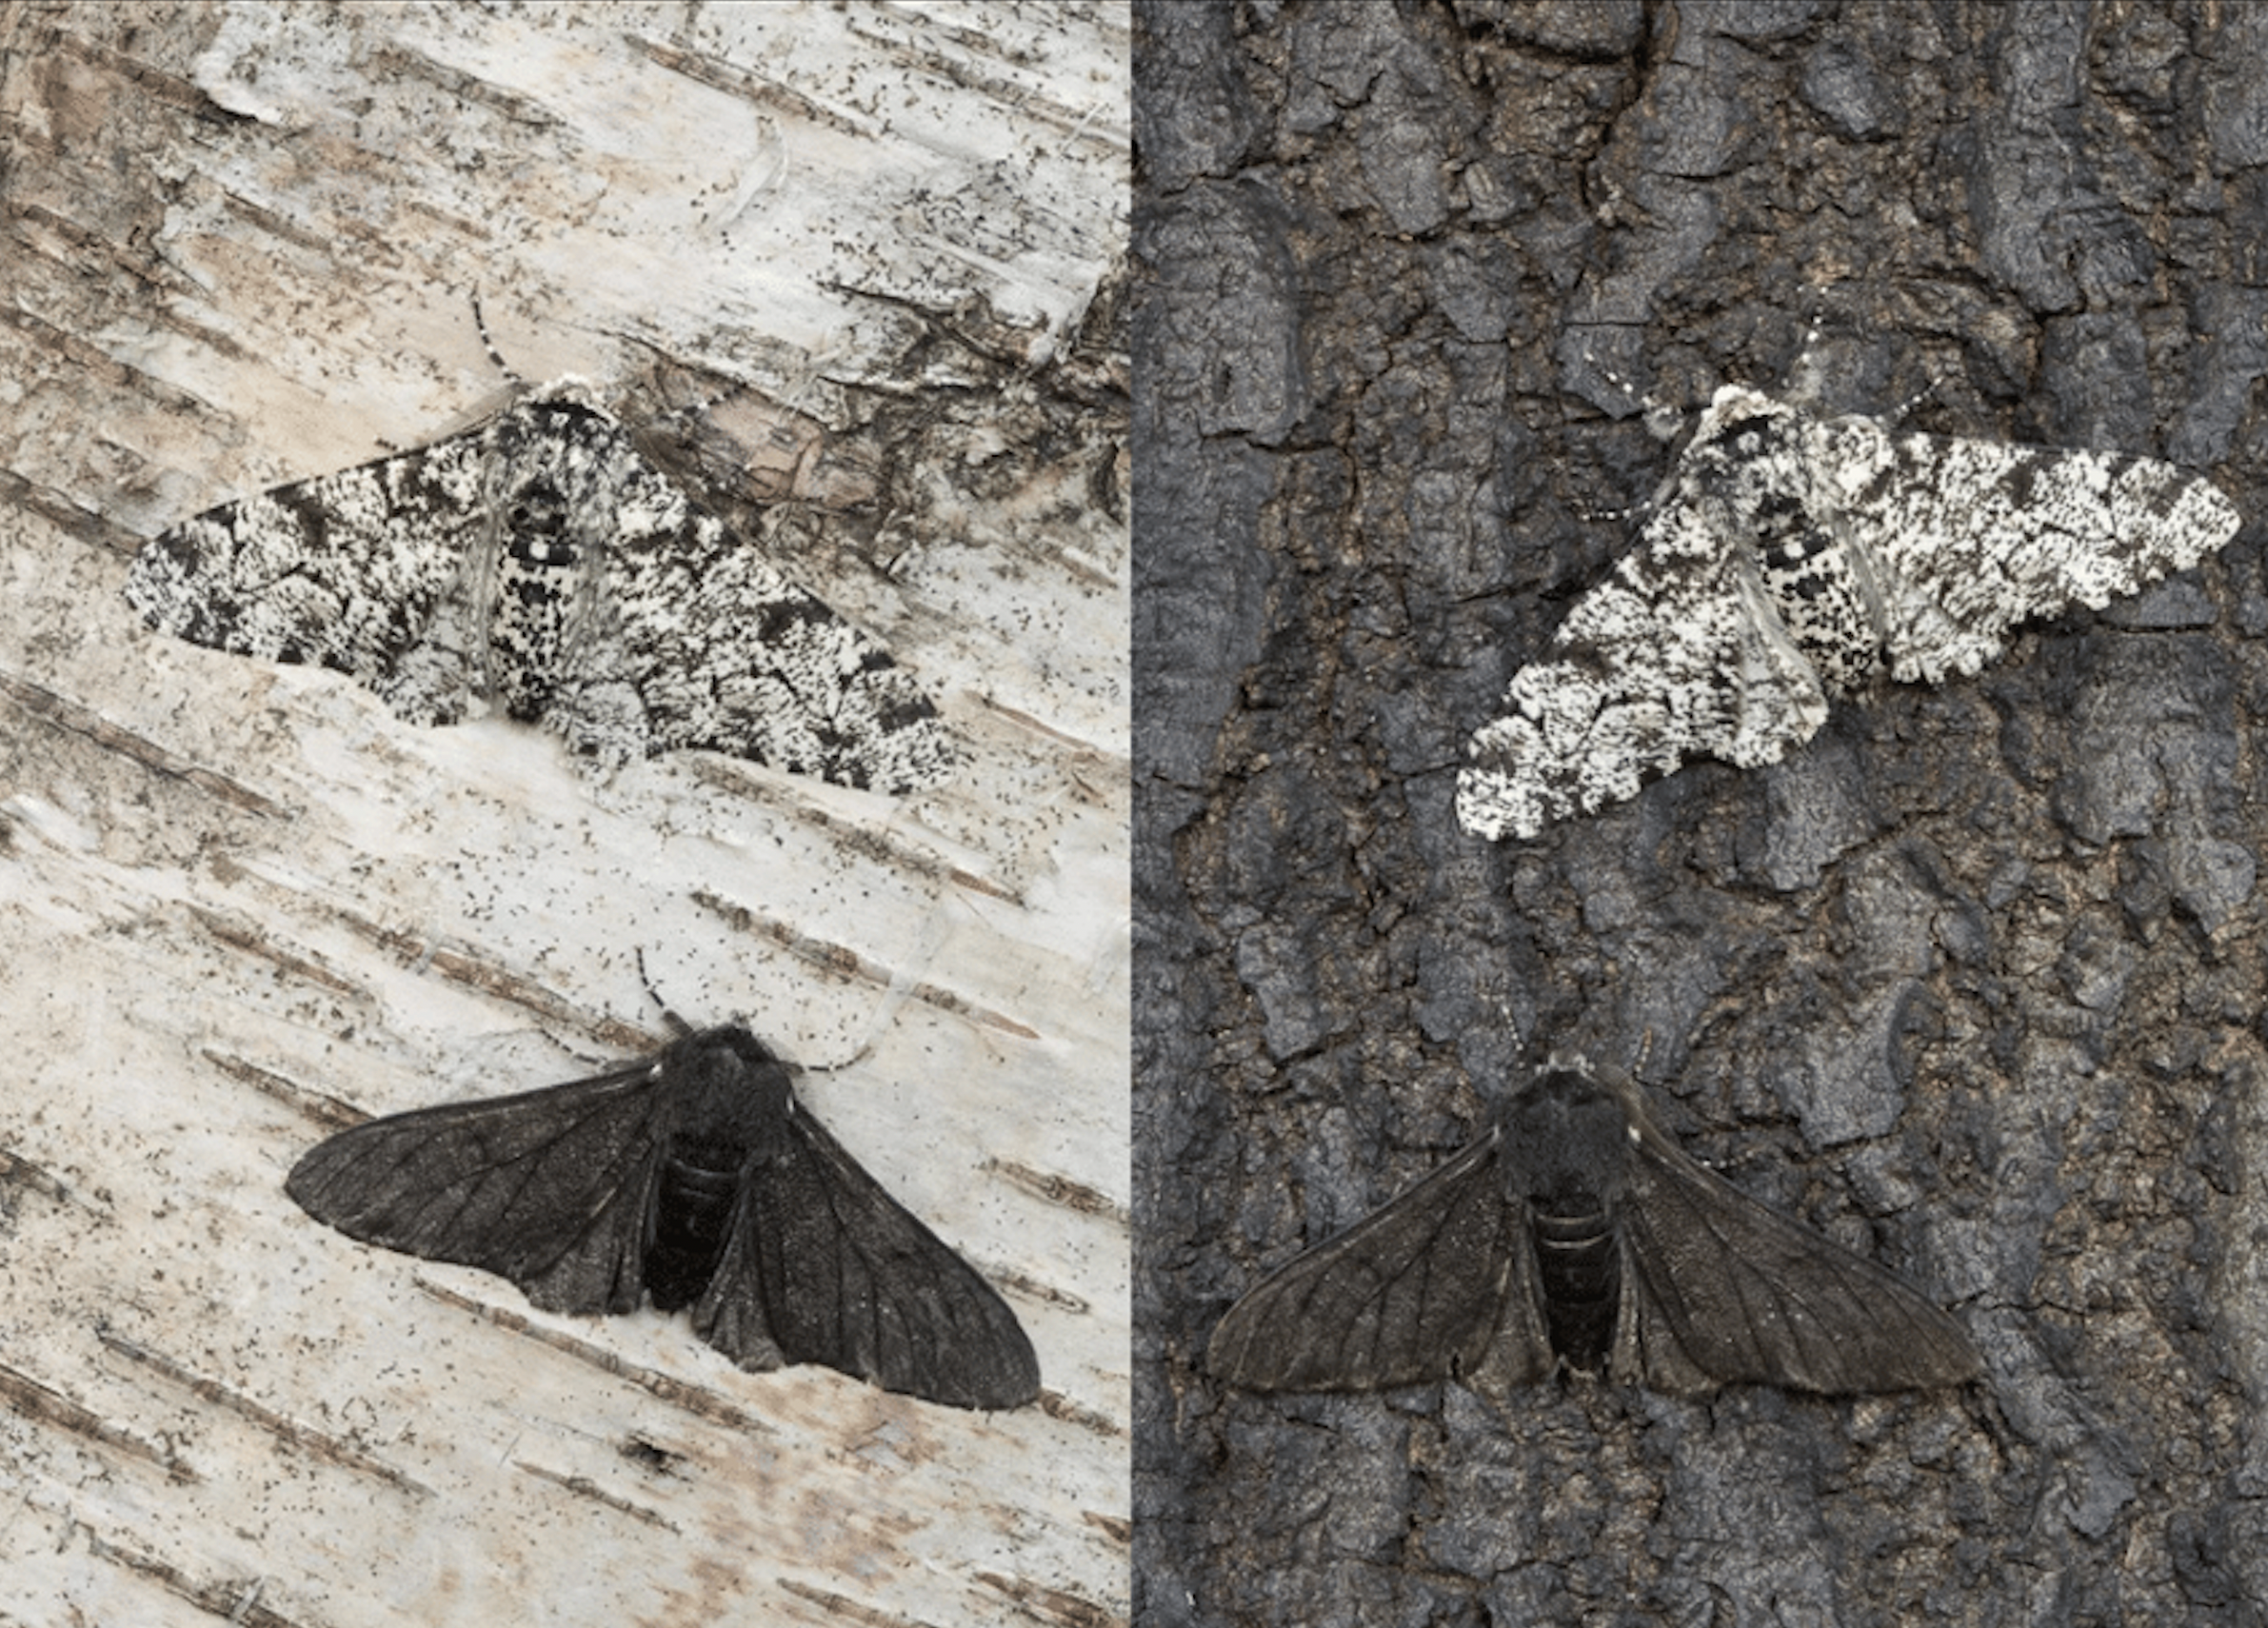 bướm đen và bướm trắng trên thân cây bạch dương